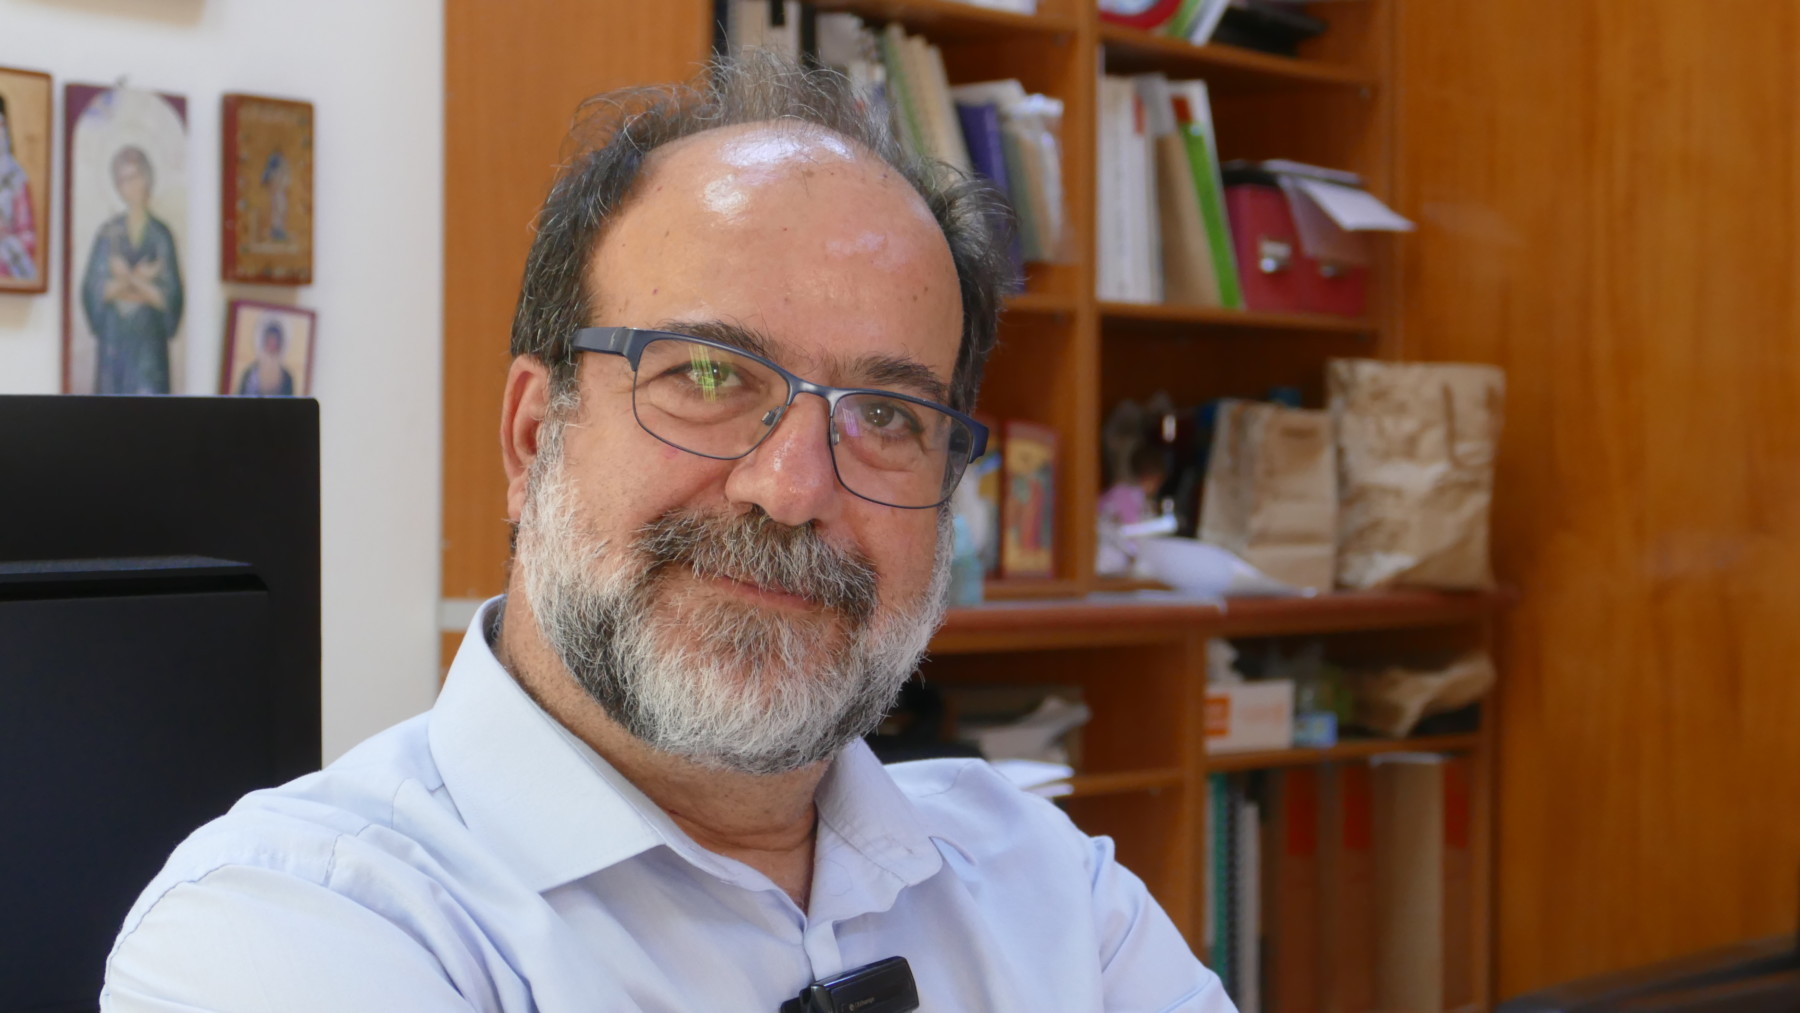 Χρήστος Χατζηχριστοδούλου, Καθηγητής Επιδημιολογίας και Υγιεινής του Πανεπιστημίου Θεσσαλίας